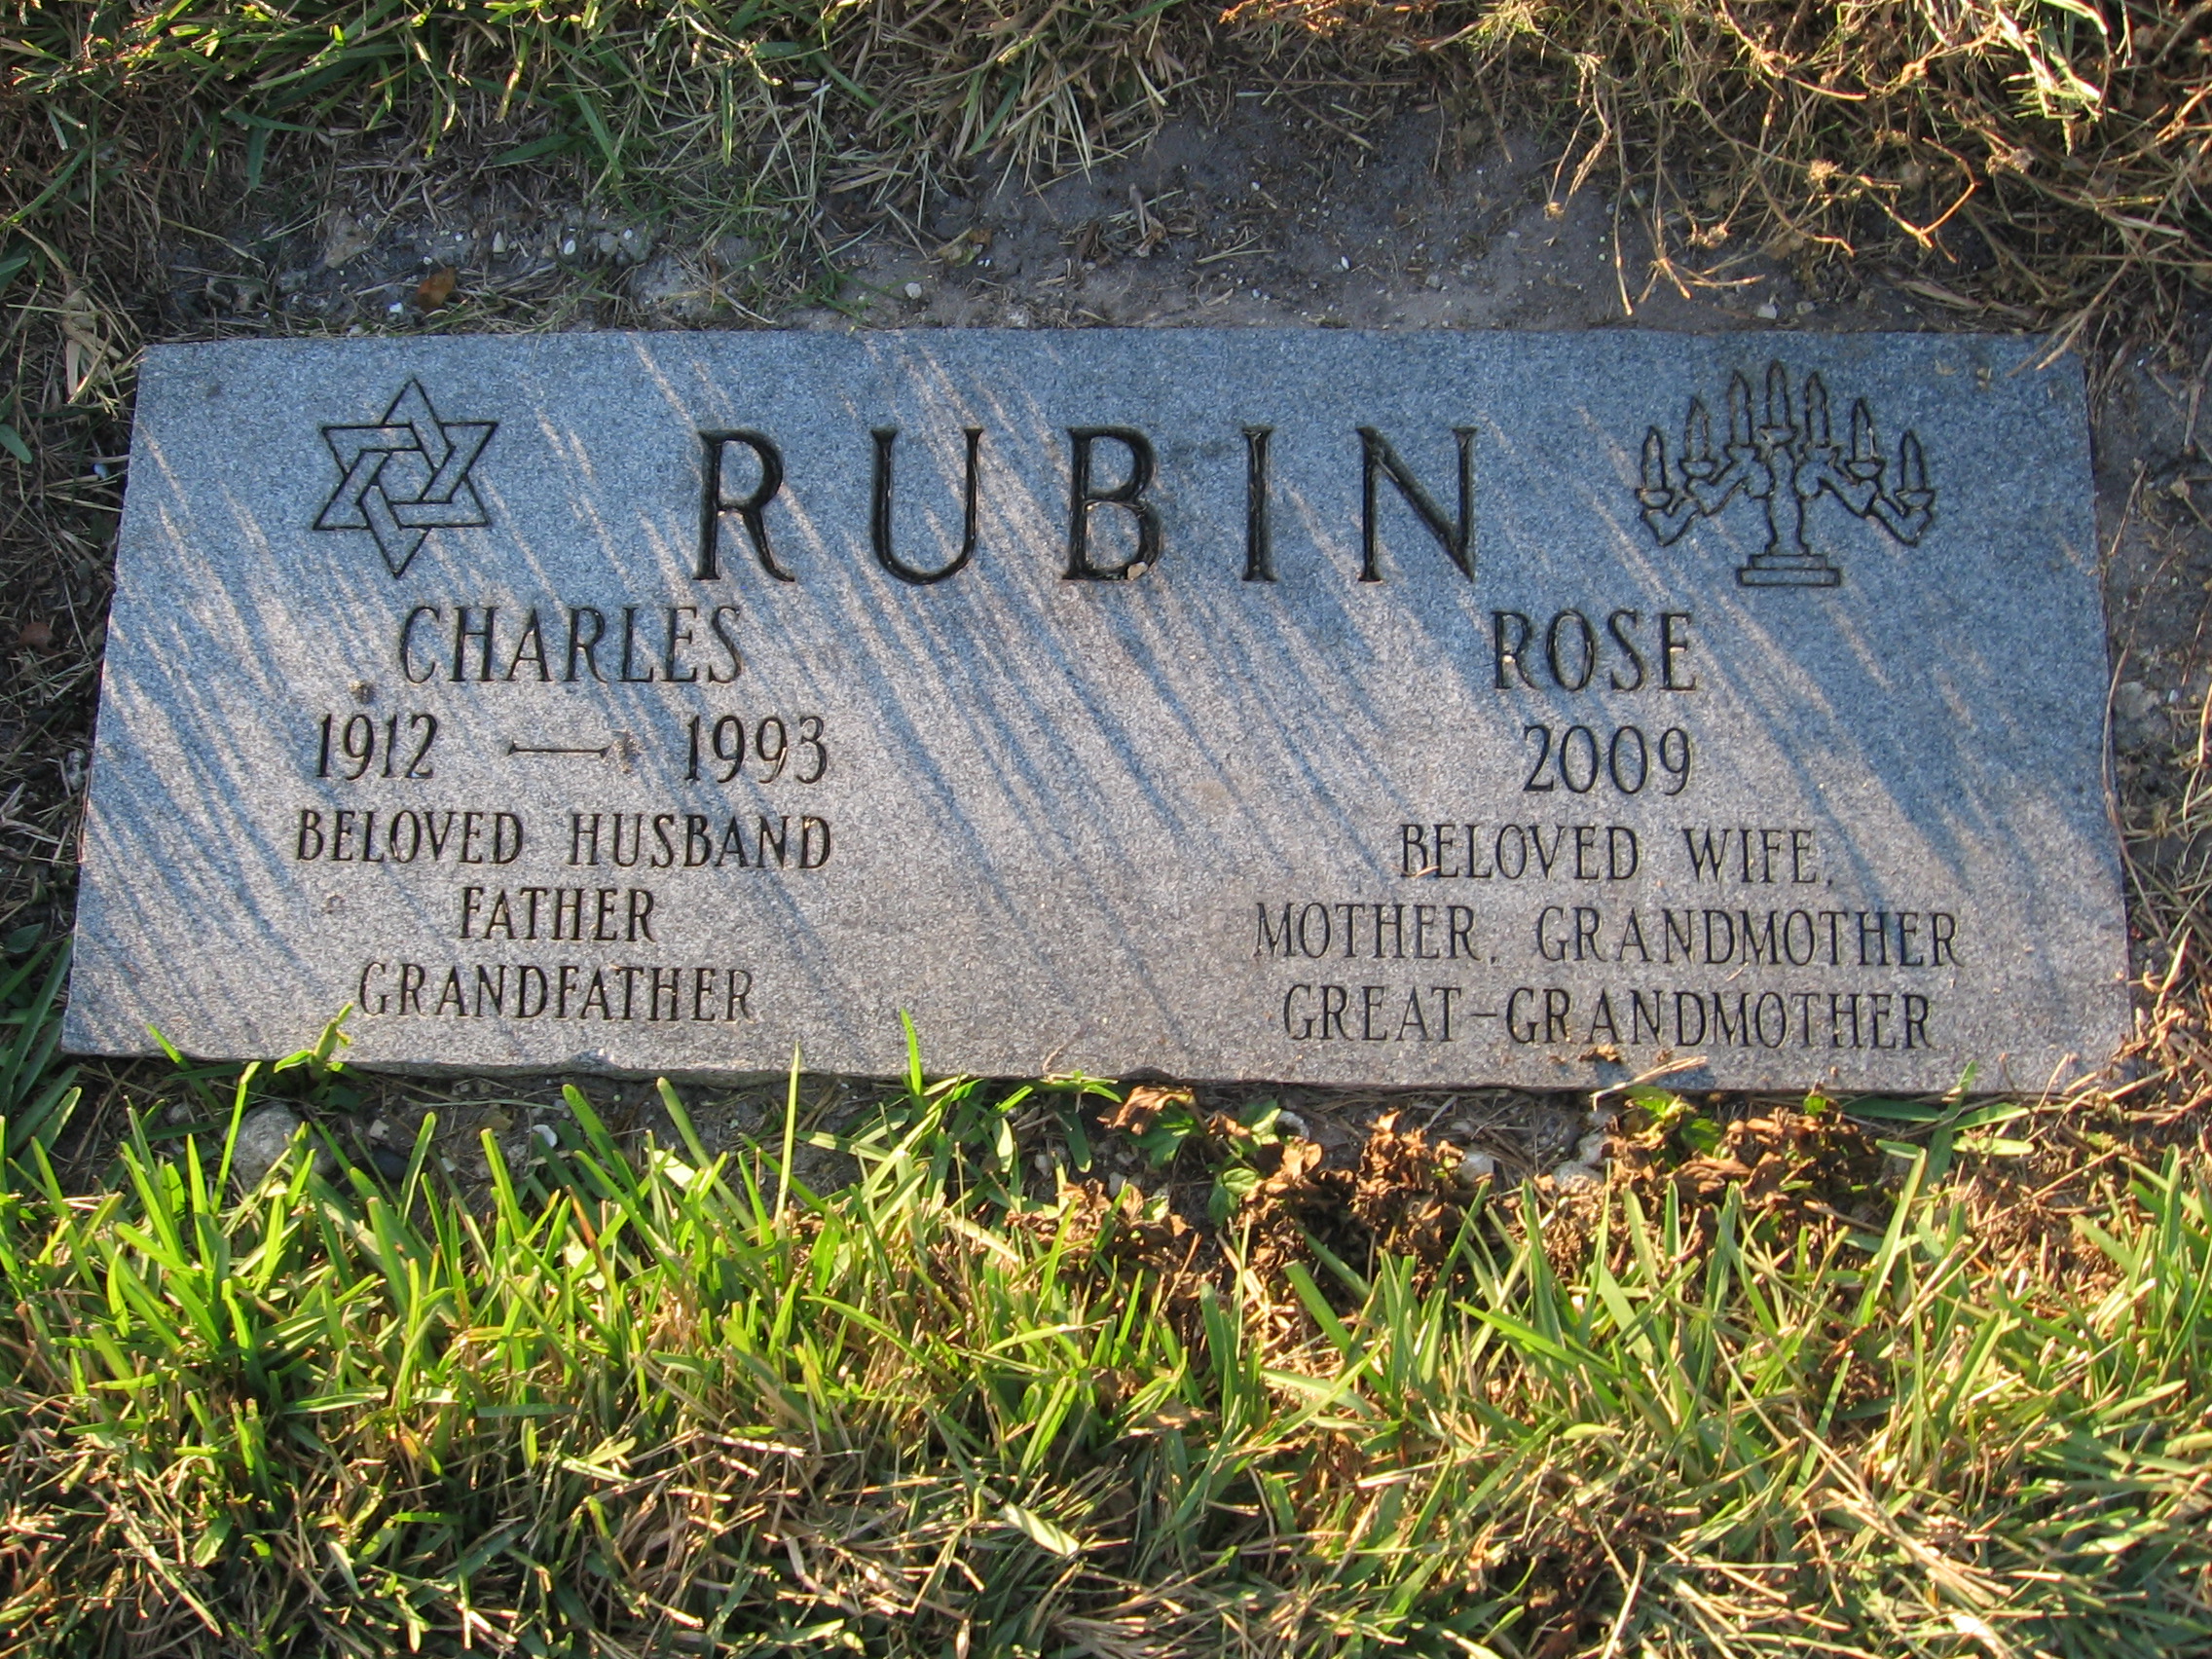 Charles Rubin